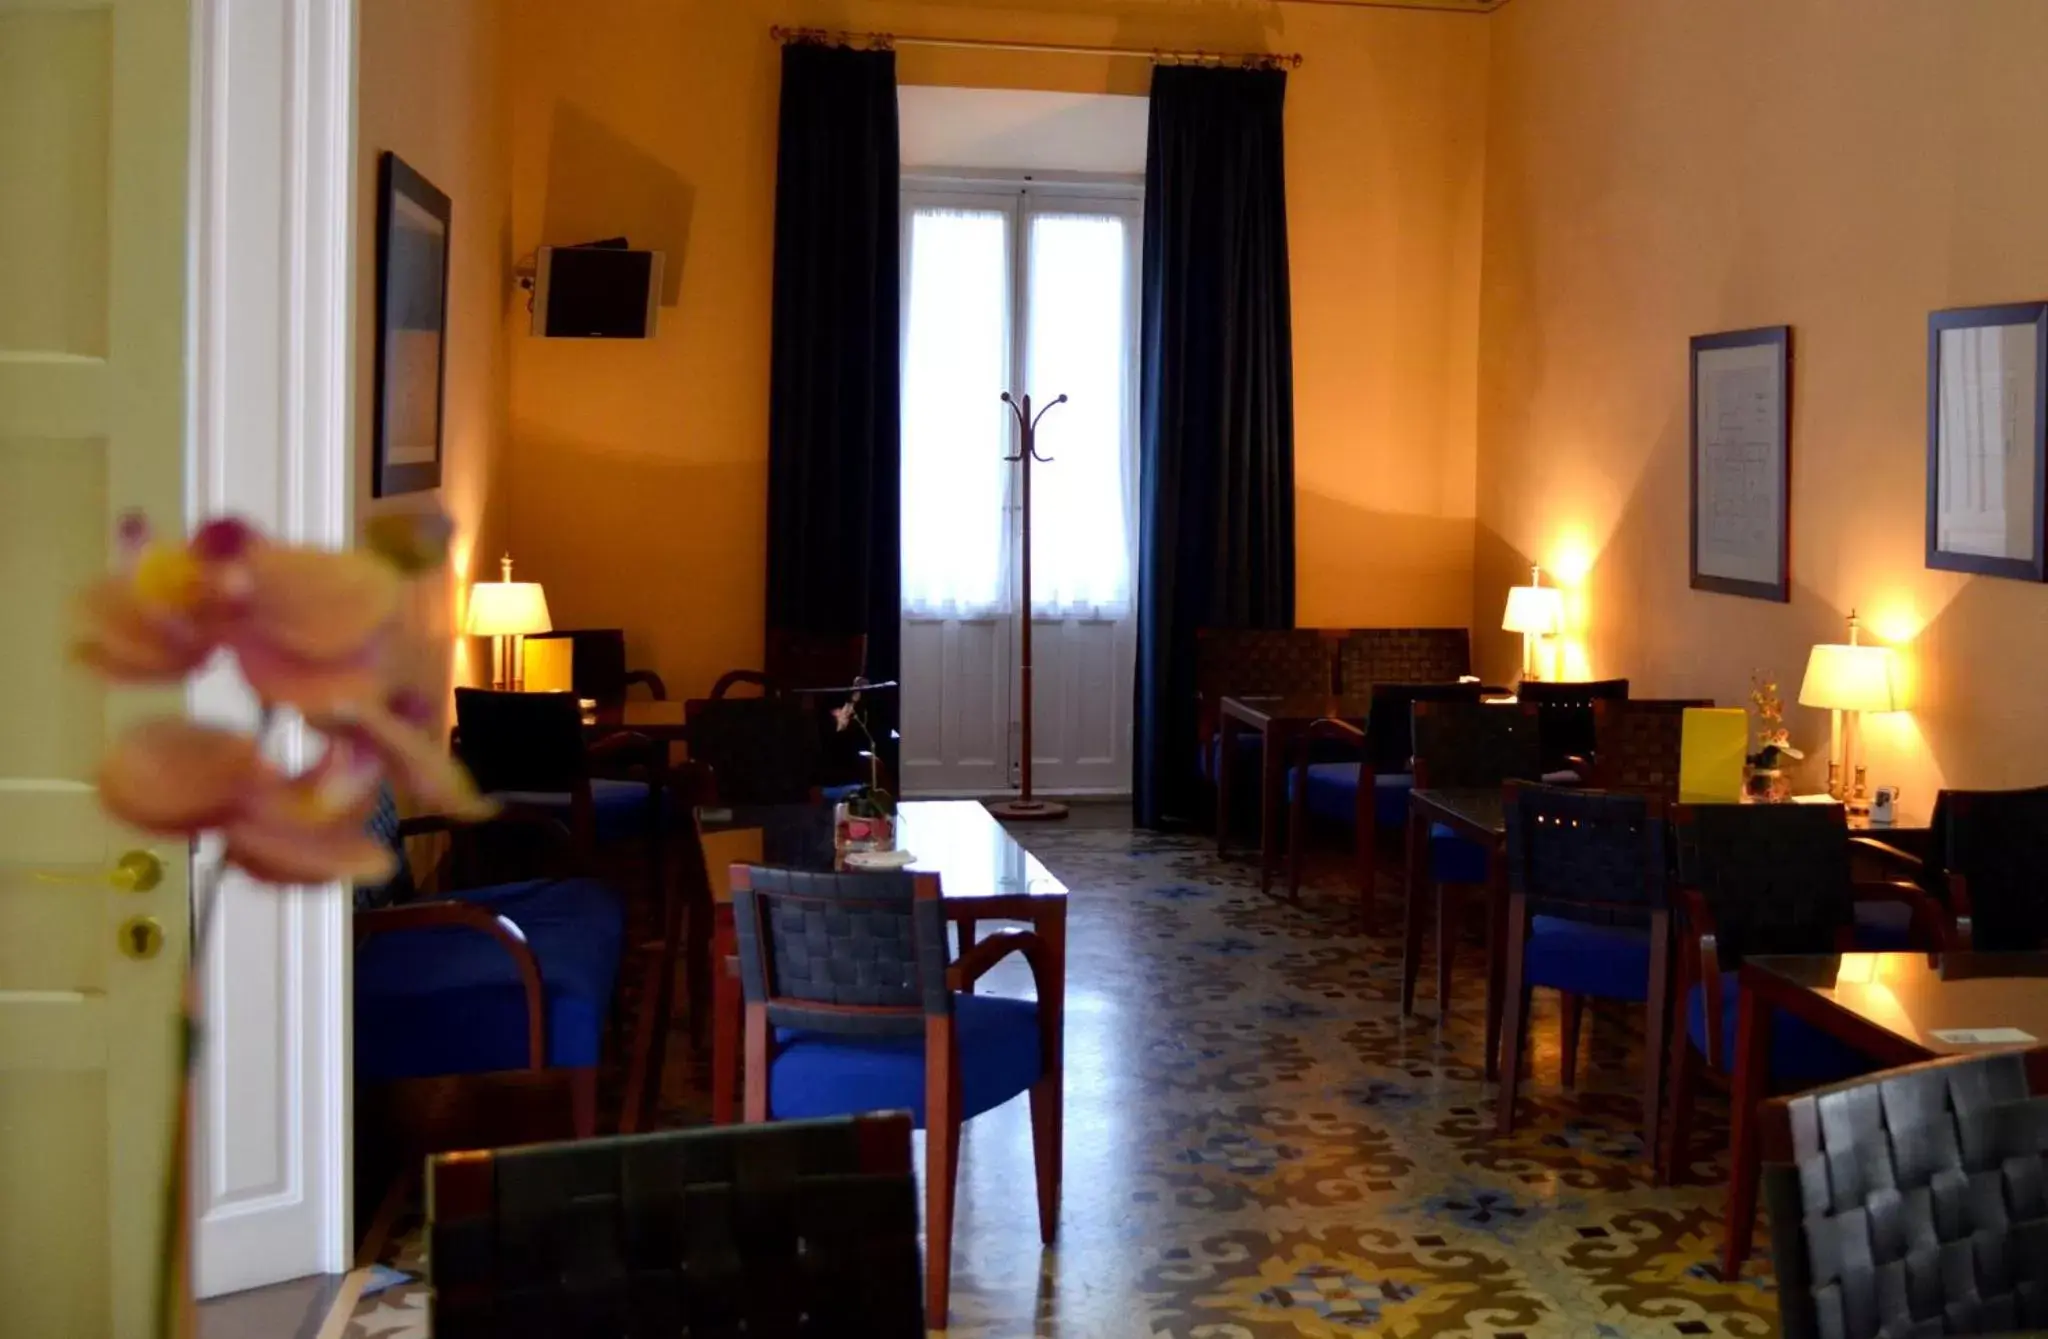 Lounge or bar, Restaurant/Places to Eat in Hospedería Mirador de Llerena